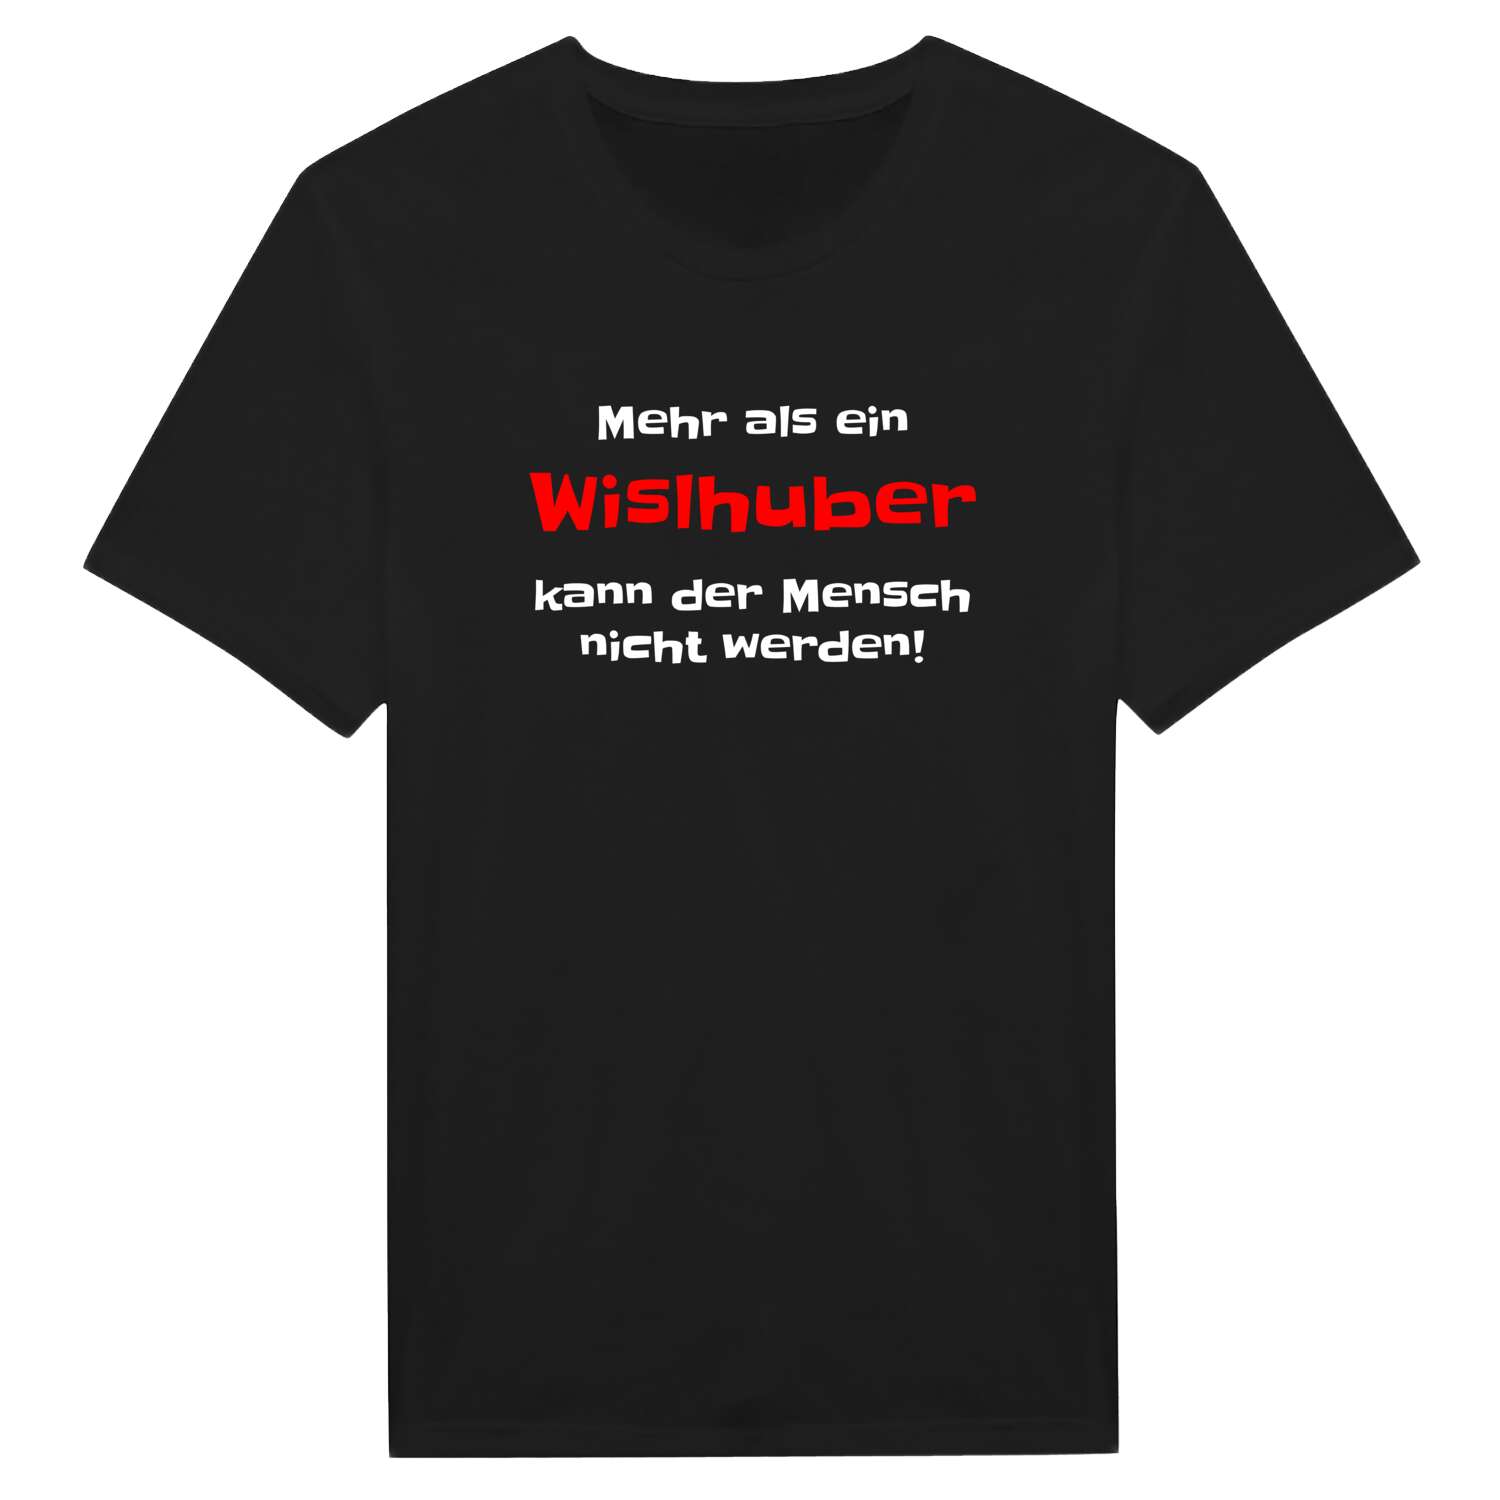 Wislhub T-Shirt »Mehr als ein«